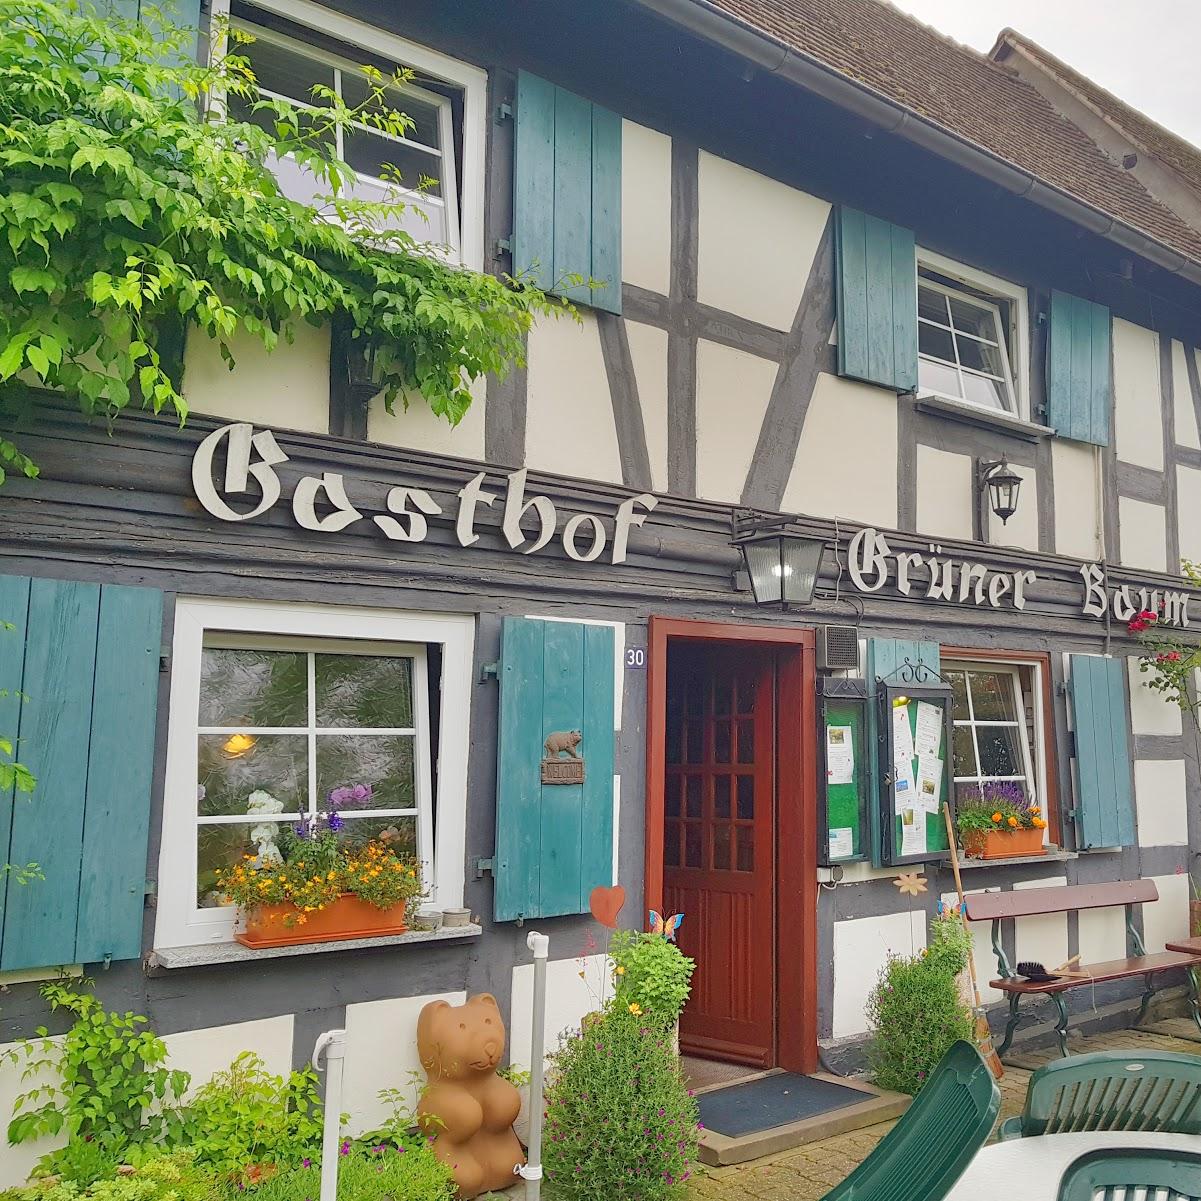 Restaurant "Grüner Baum Linx" in Rheinau